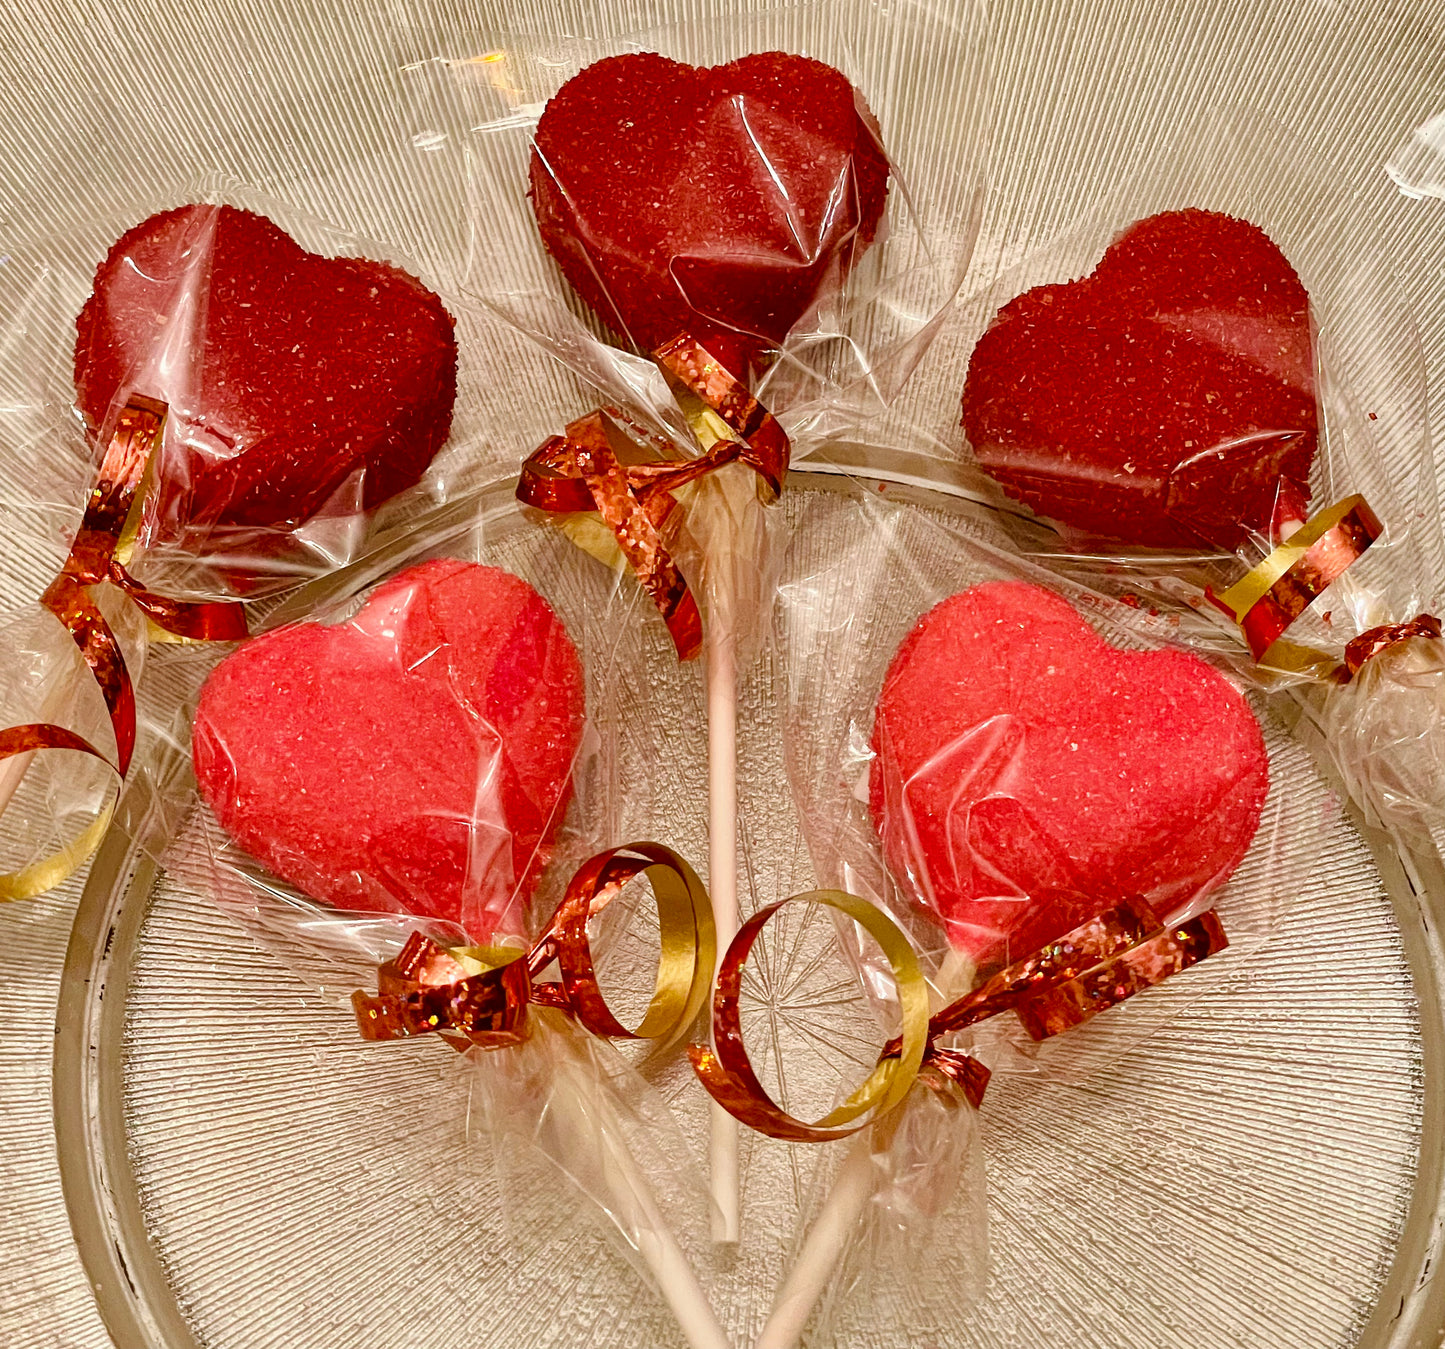 Heart Shaped Cherry Cake Pops